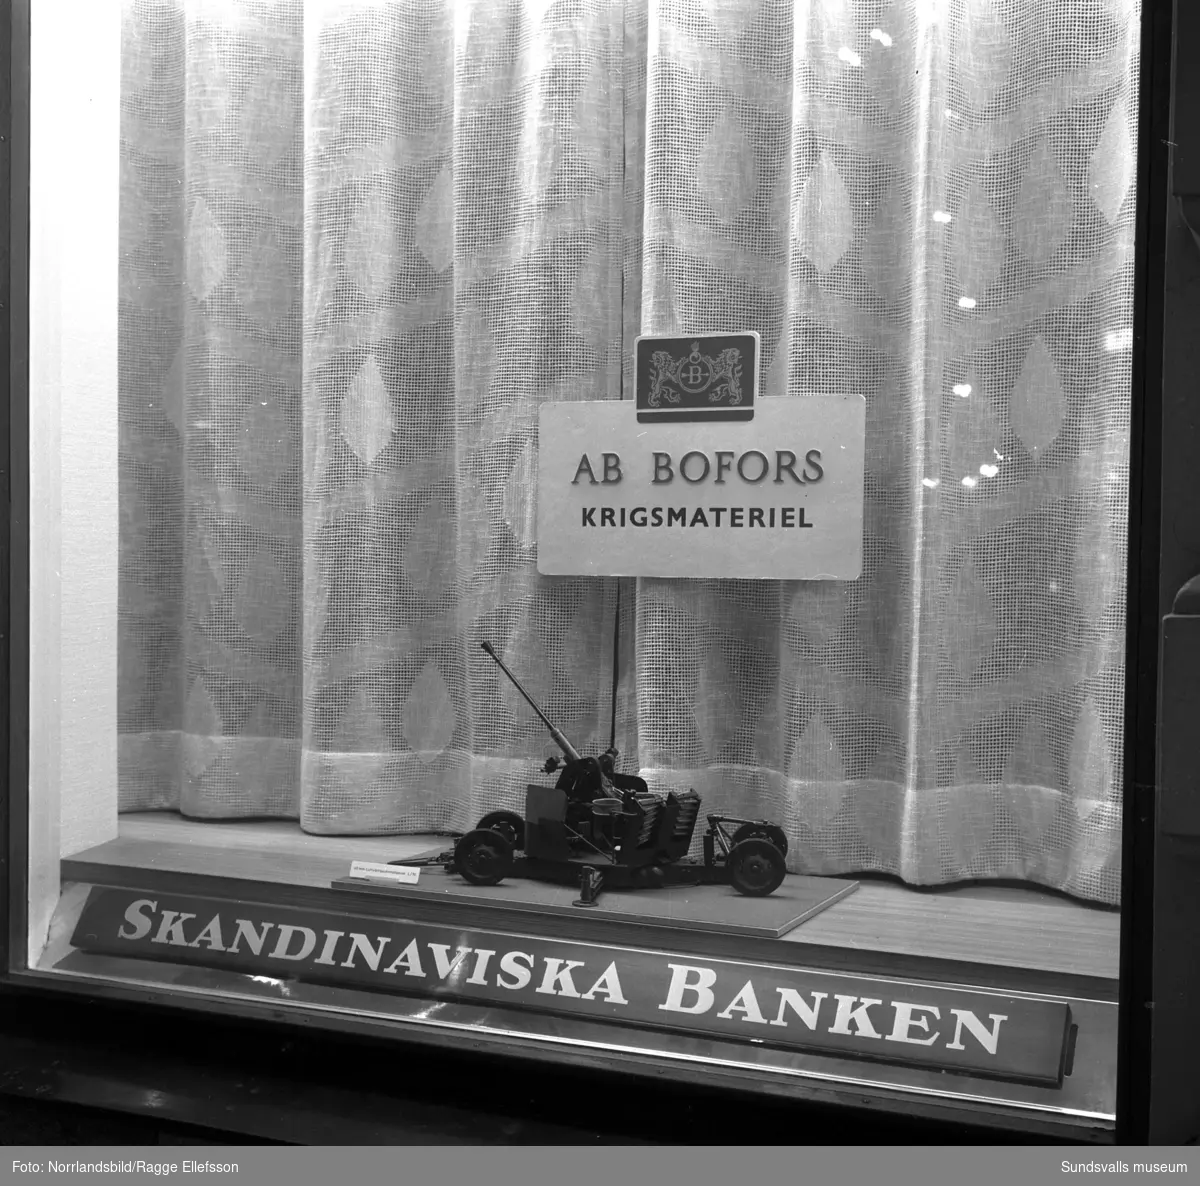 Skandinaviska bankens skyltning om Bofors.